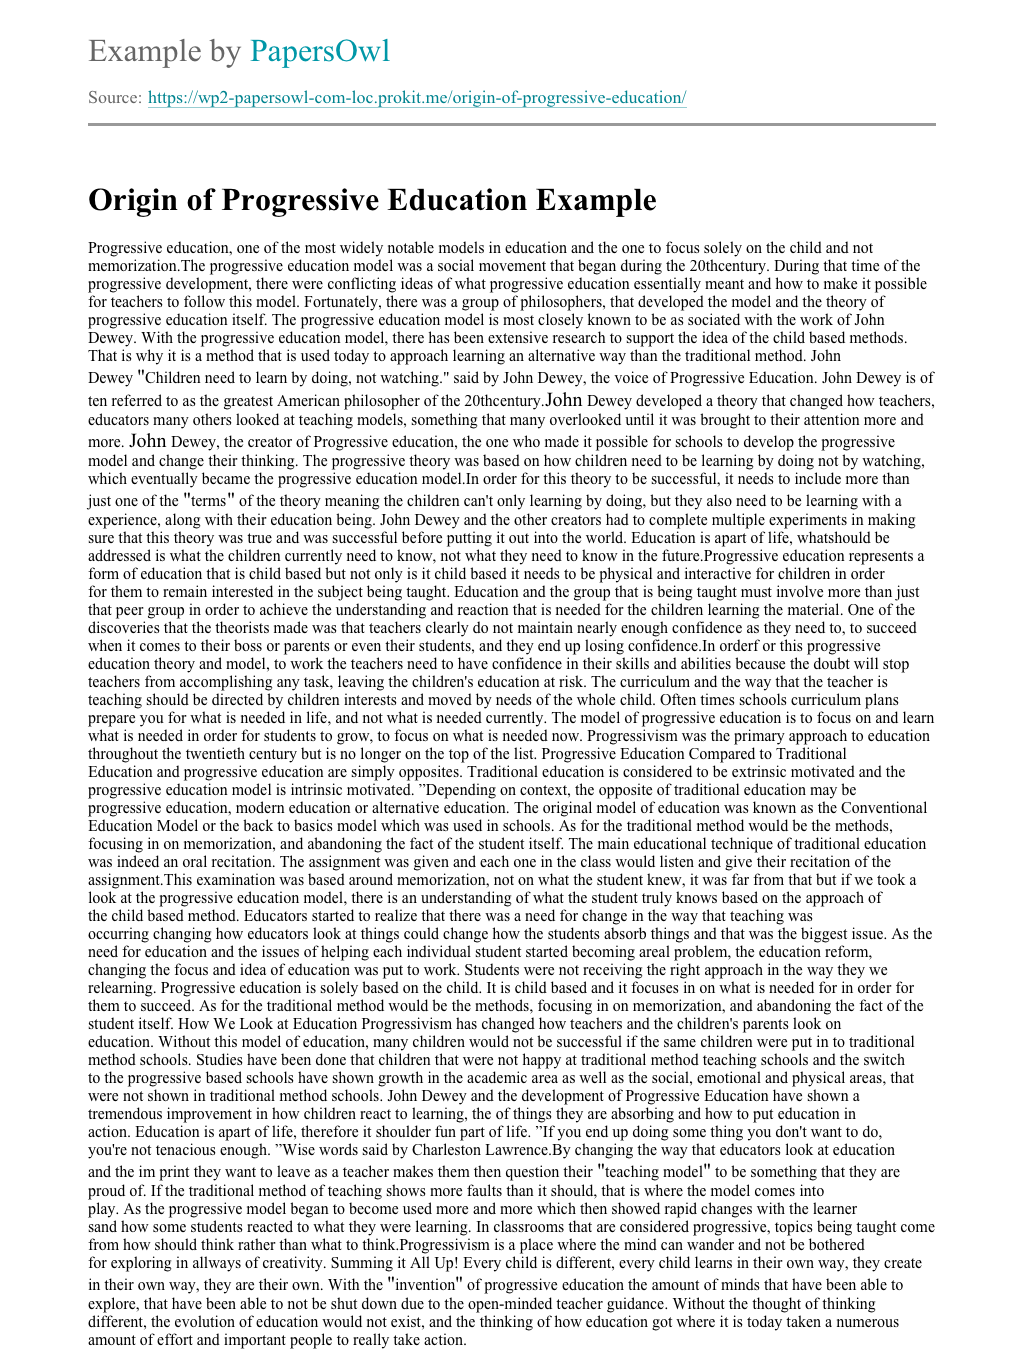 essay on progressivism in education